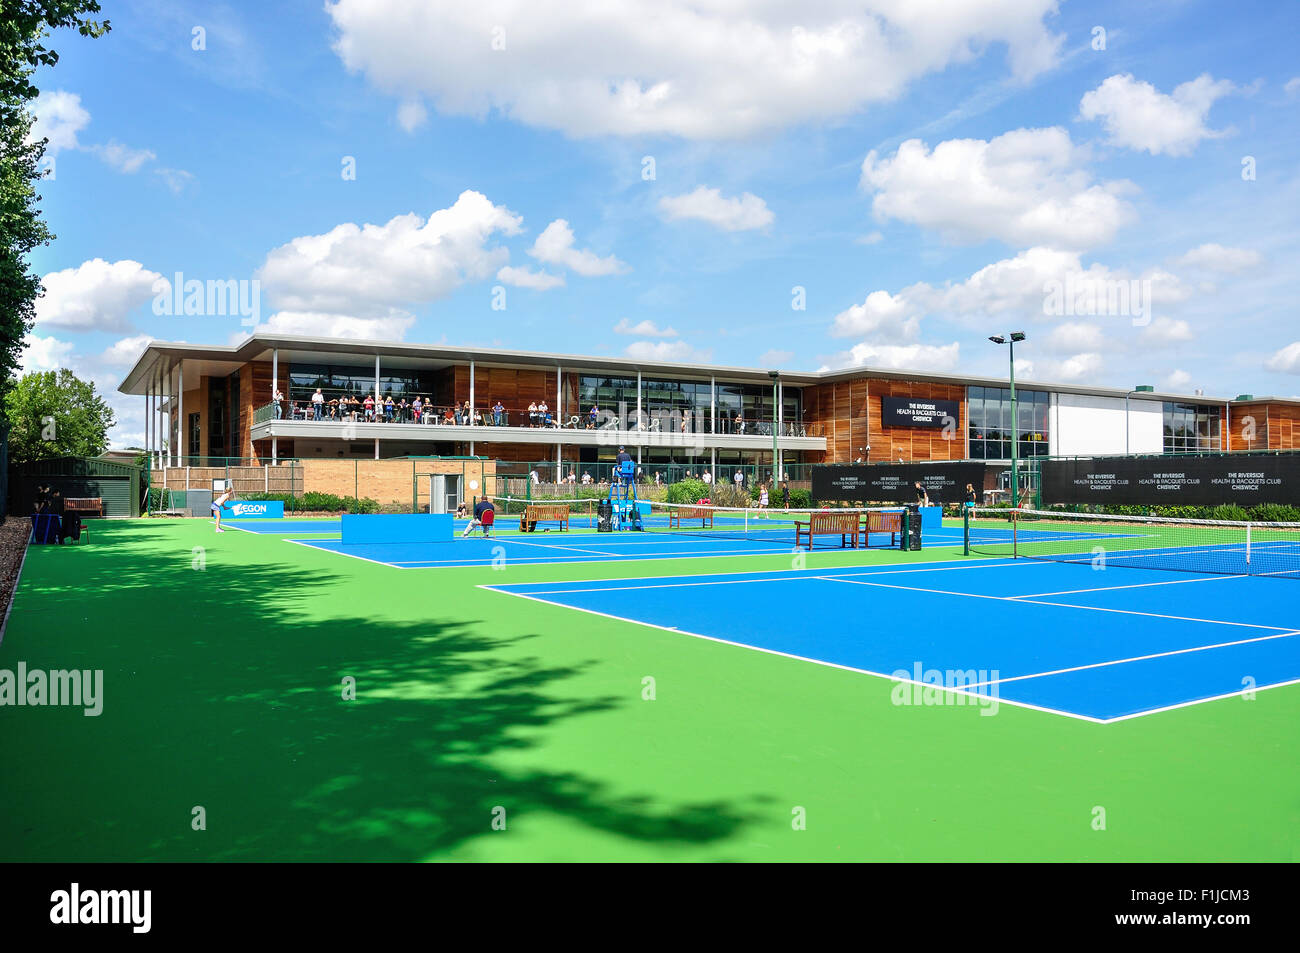 Courts de tennis au Riverside Health & raquettes Club Chiswick, Arrondissement de Hounslow, Greater London, Angleterre, Royaume-Uni Banque D'Images